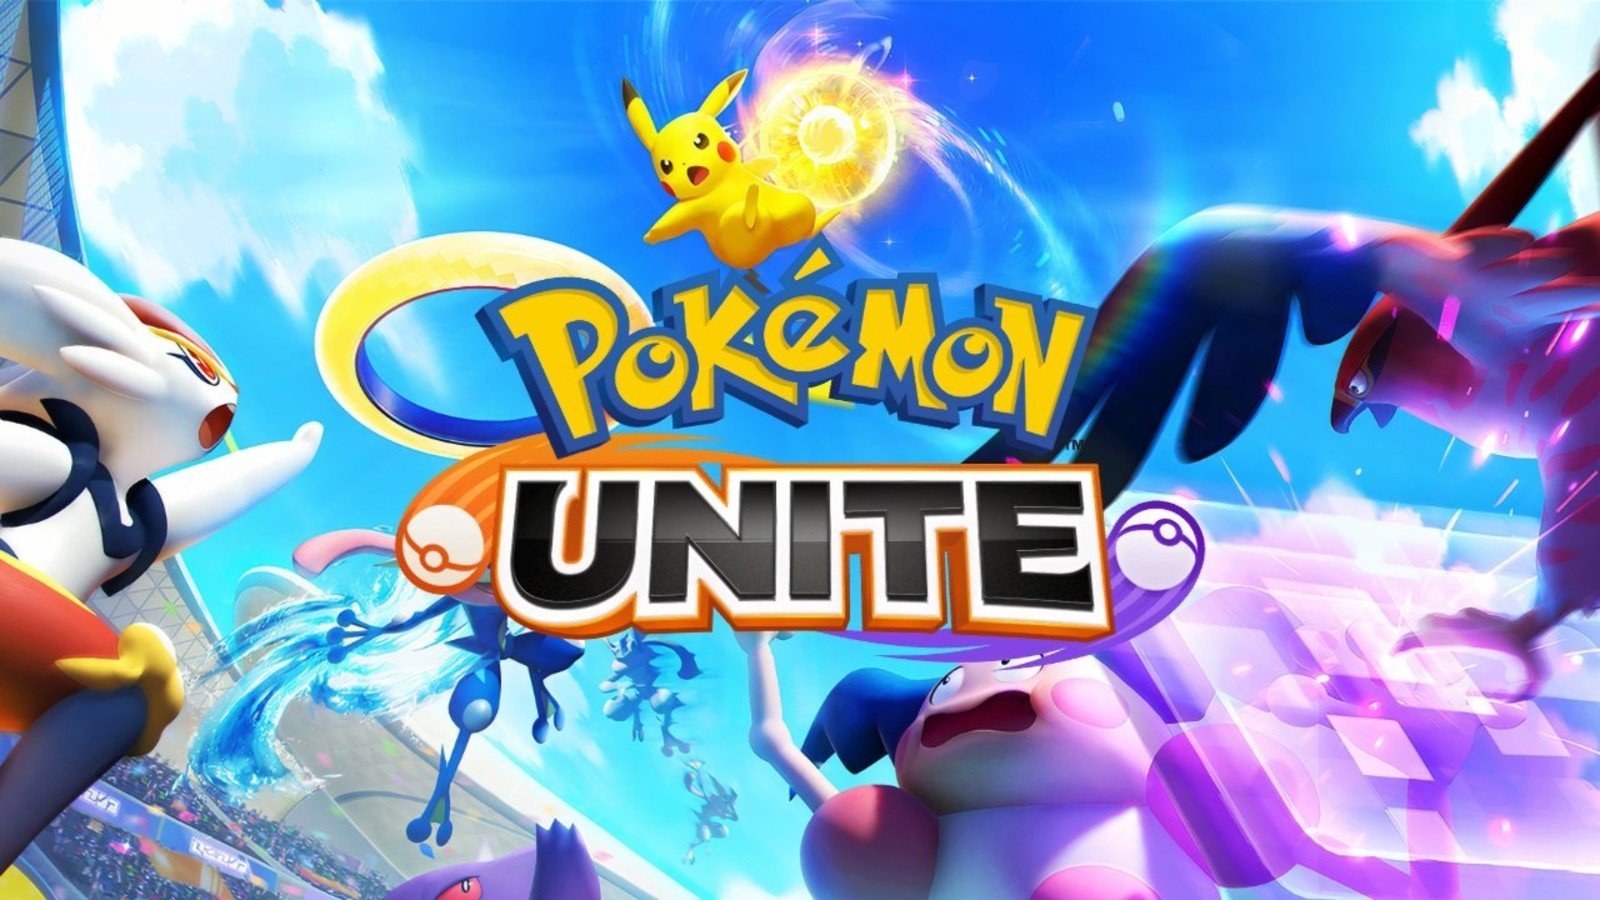 Danh sách Pokemon Unite mạnh nhất theo từng thứ hạng cho đội hình tháng 10